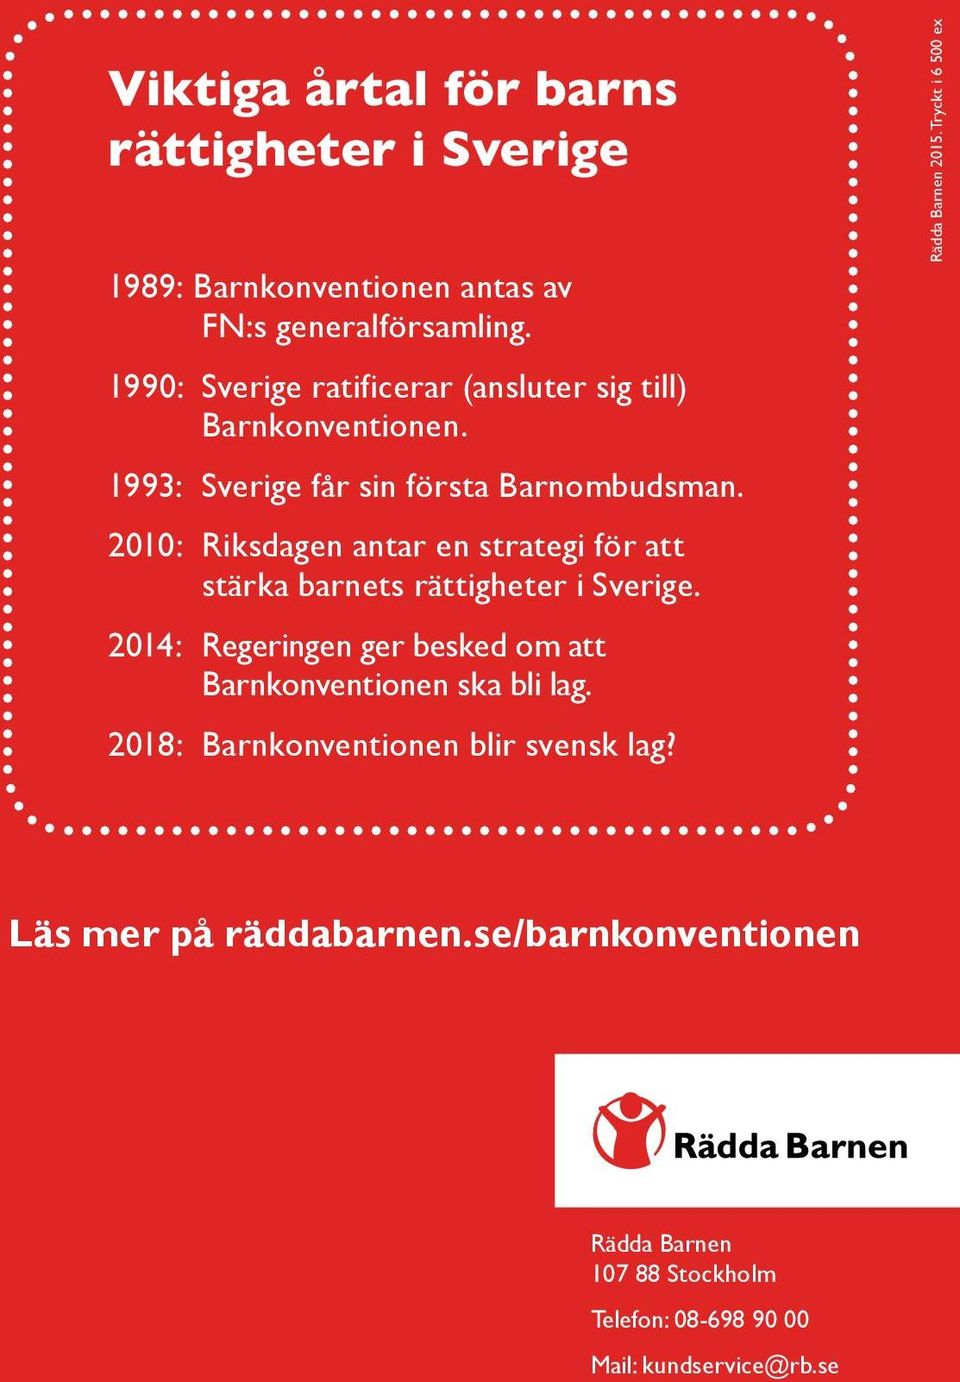 2010: Riksdagen antar en strategi för att stärka barnets rättigheter i Sverige.